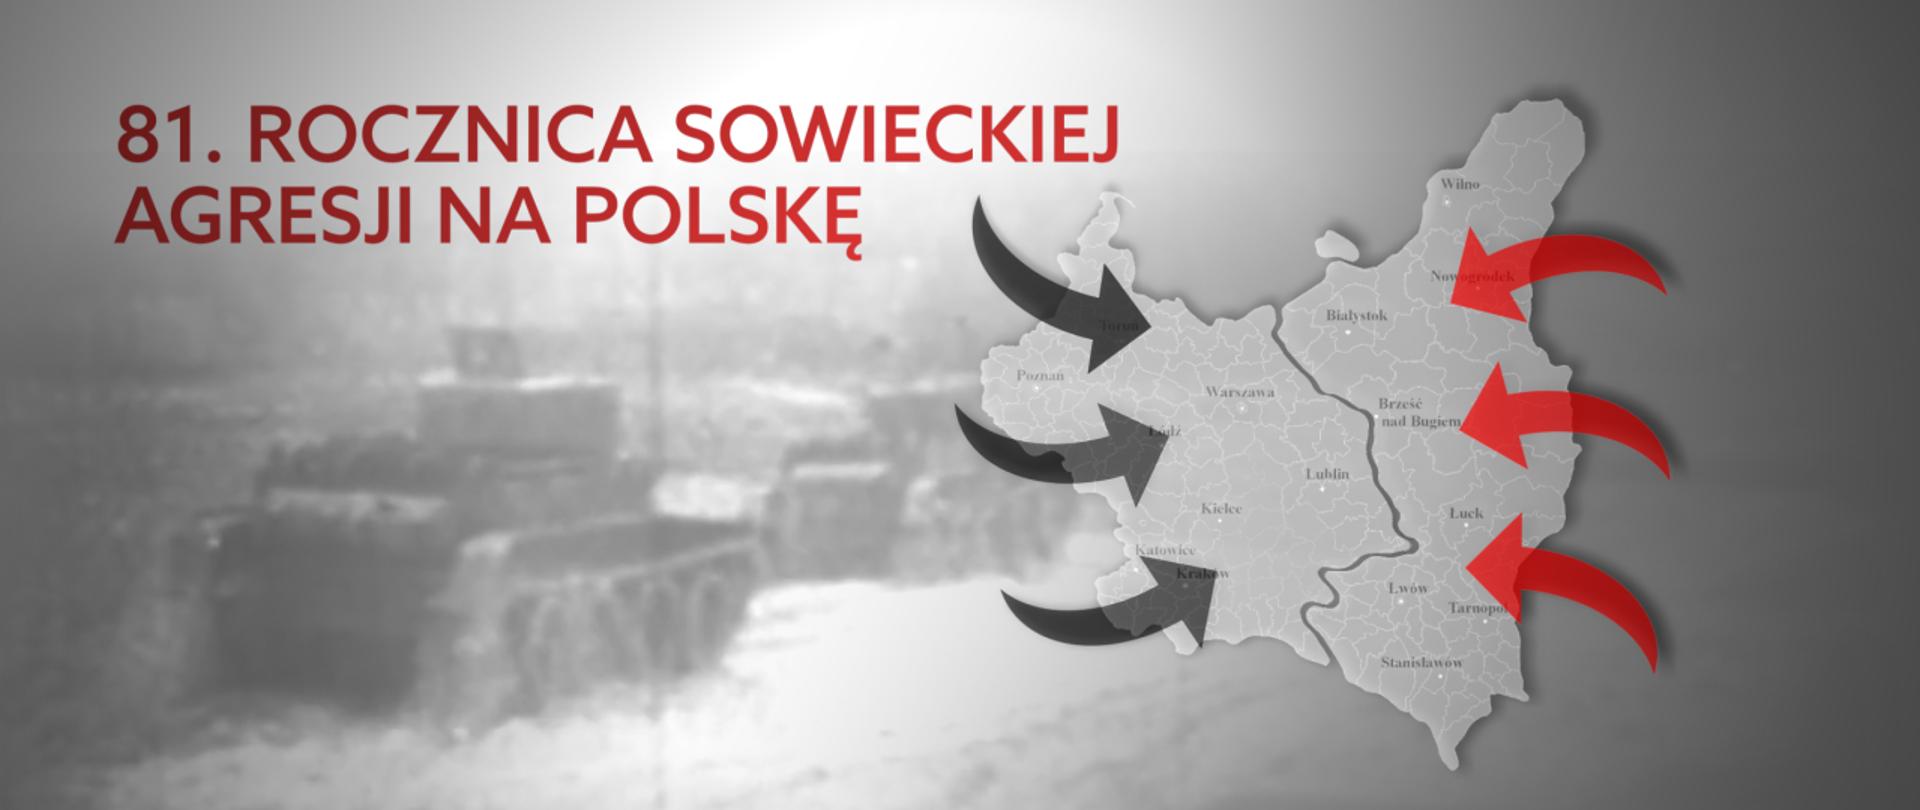 rocznica agresji sowieckiej na Polskę